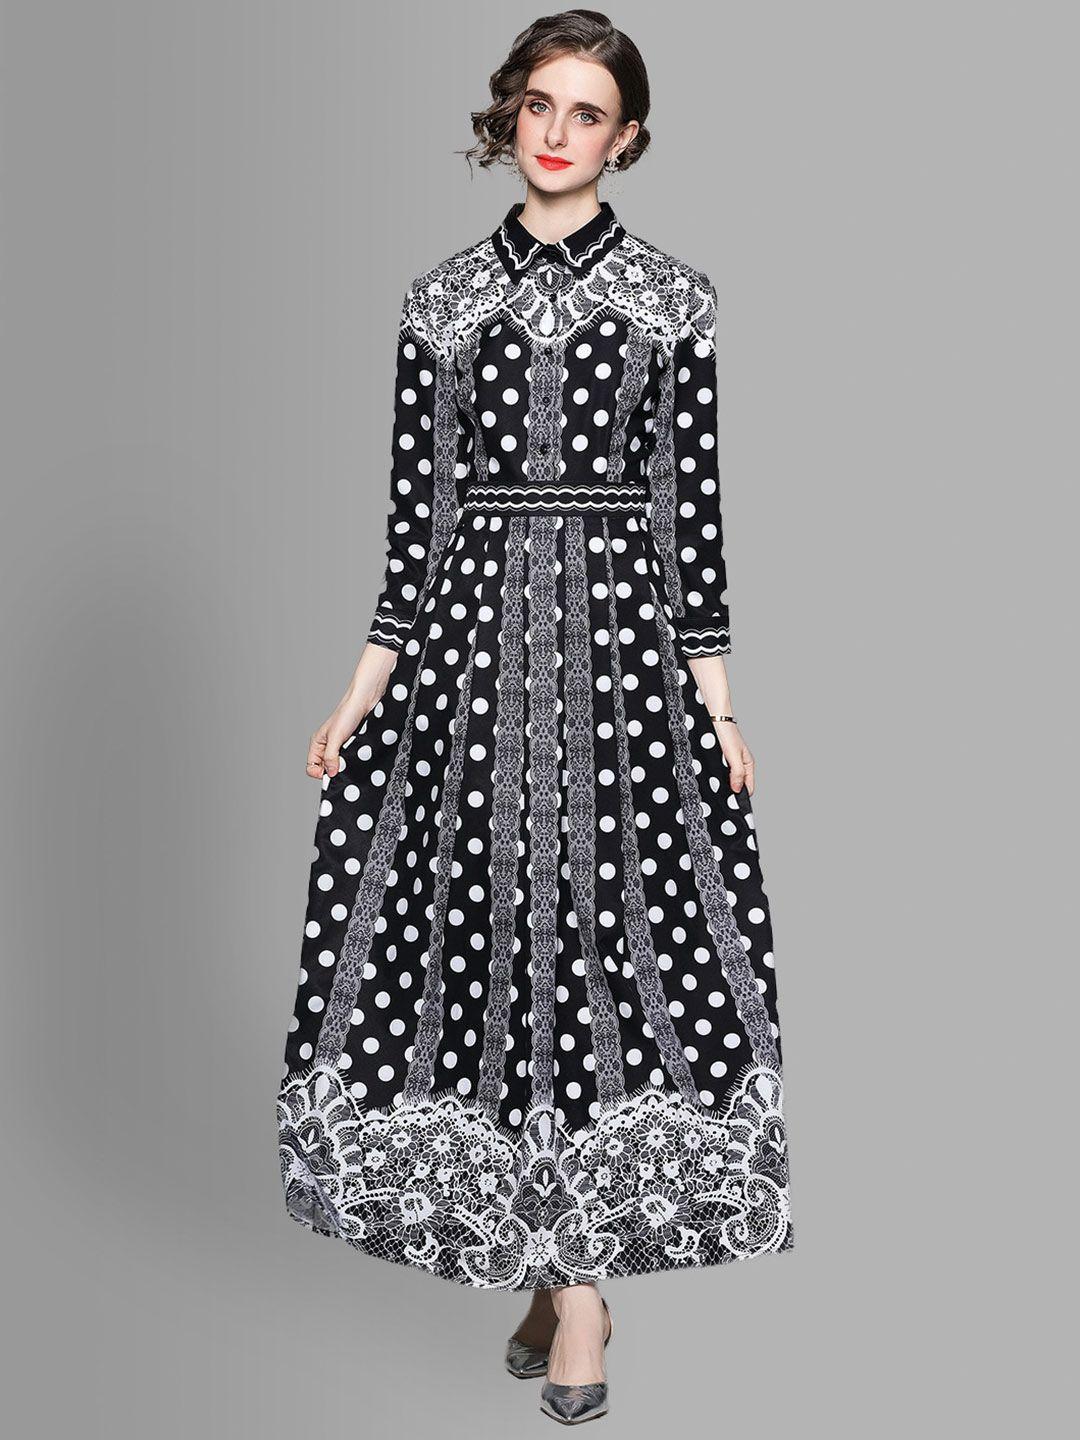 jc collection black & white maxi dress